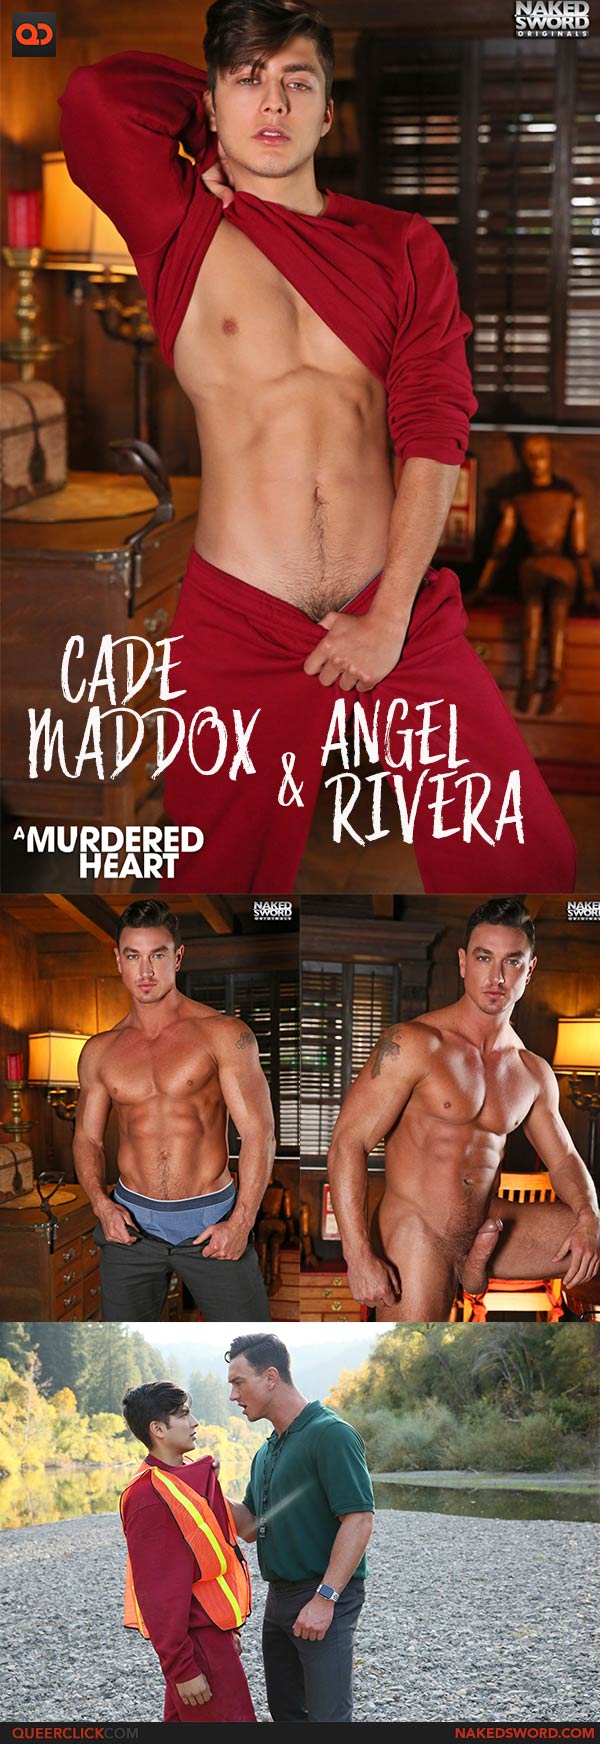 NakedSword: Cade Maddox and Angel Rivera